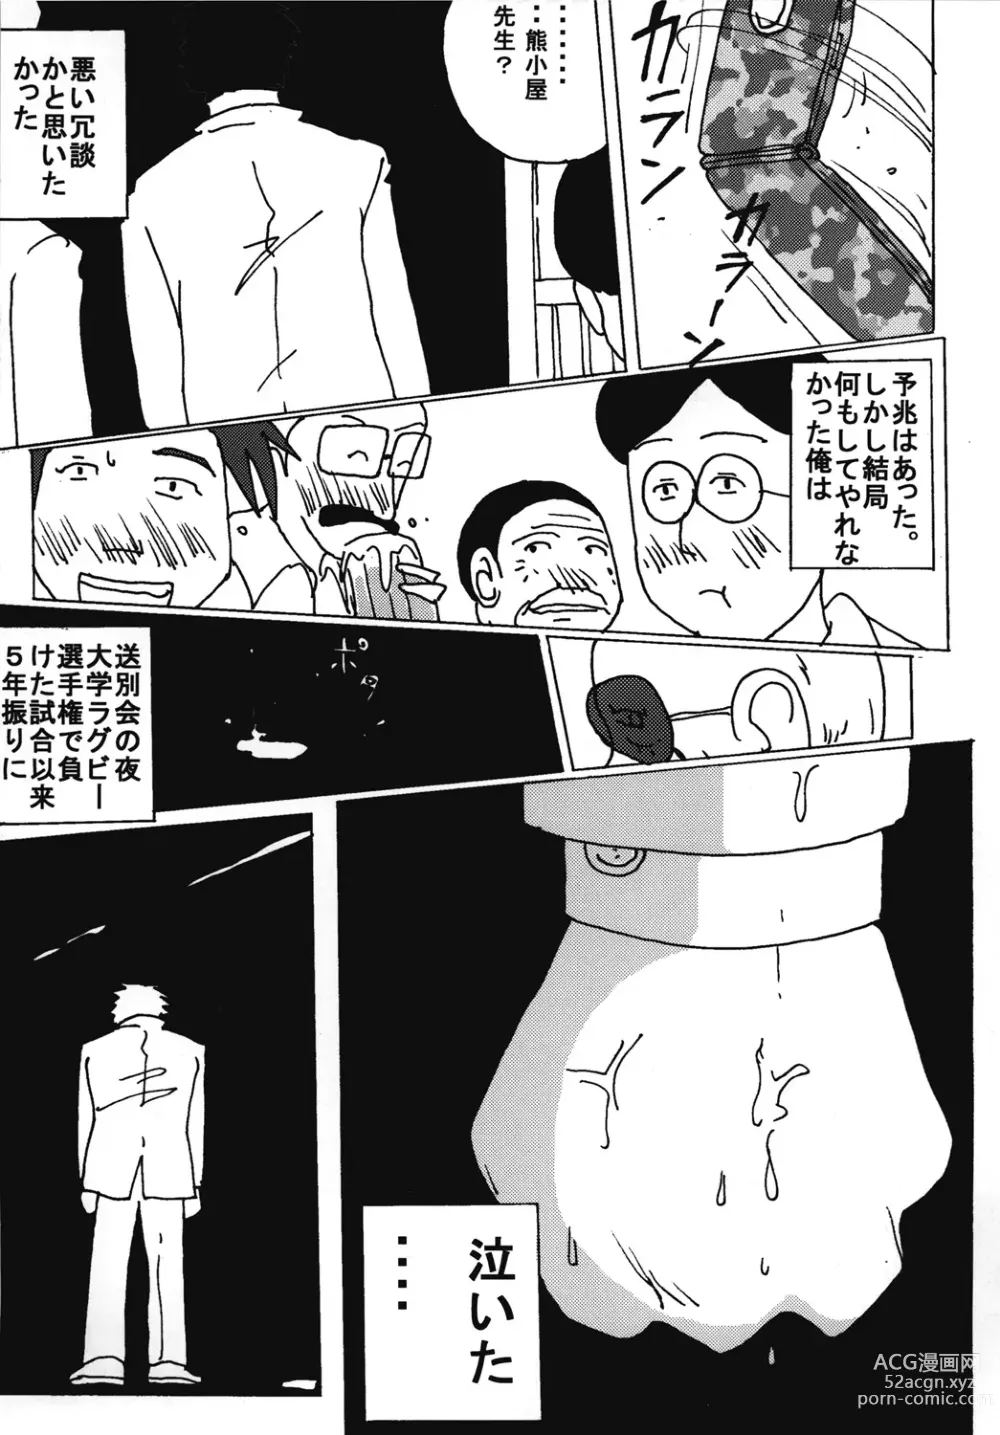 Page 4 of doujinshi Mune Ippai no Dizzy